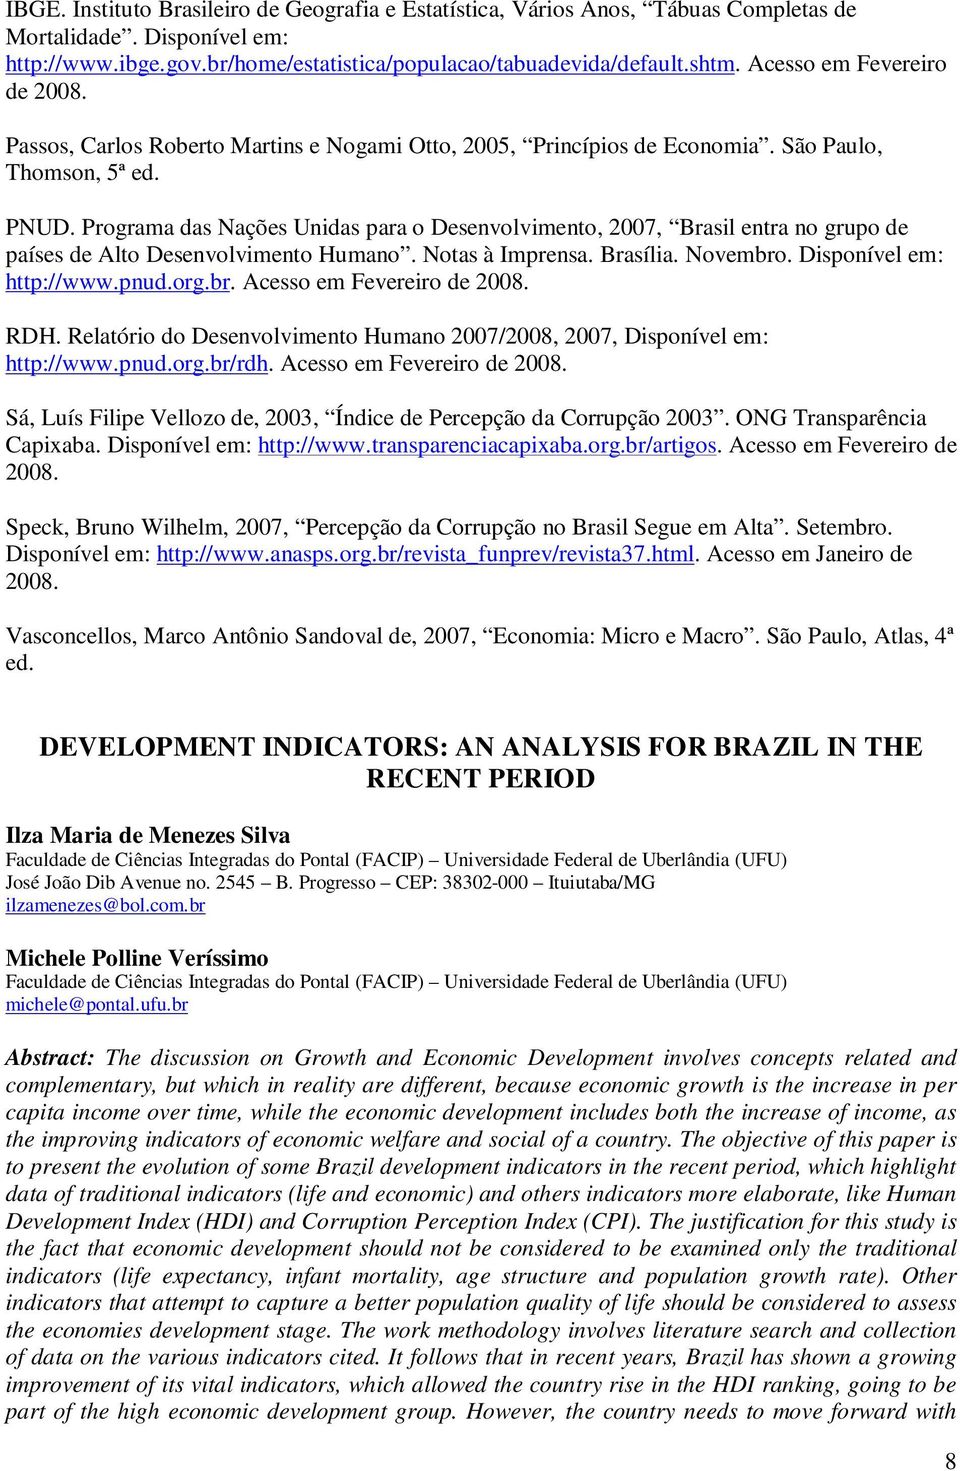 Programa das Nações Unidas para o Desenvolvimento, 2007, Brasil entra no grupo de países de Alto Desenvolvimento Humano. Notas à Imprensa. Brasília. Novembro. Disponível em: http://www.pnud.org.br. Acesso em Fevereiro de 2008.